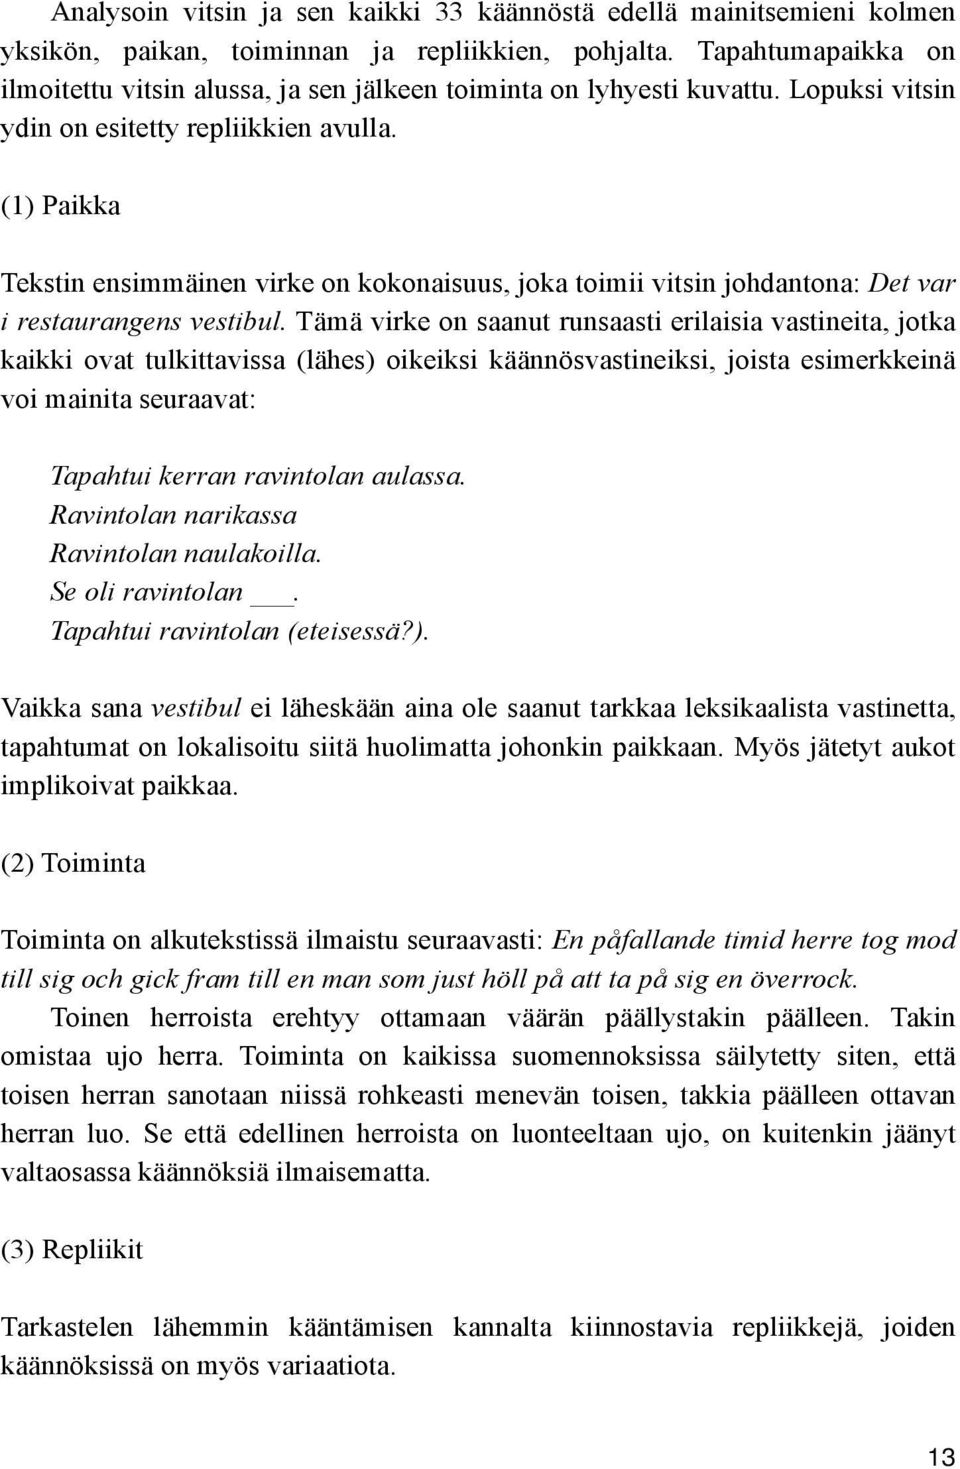 (1) Paikka Tekstin ensimmäinen virke on kokonaisuus, joka toimii vitsin johdantona: Det var i restaurangens vestibul.